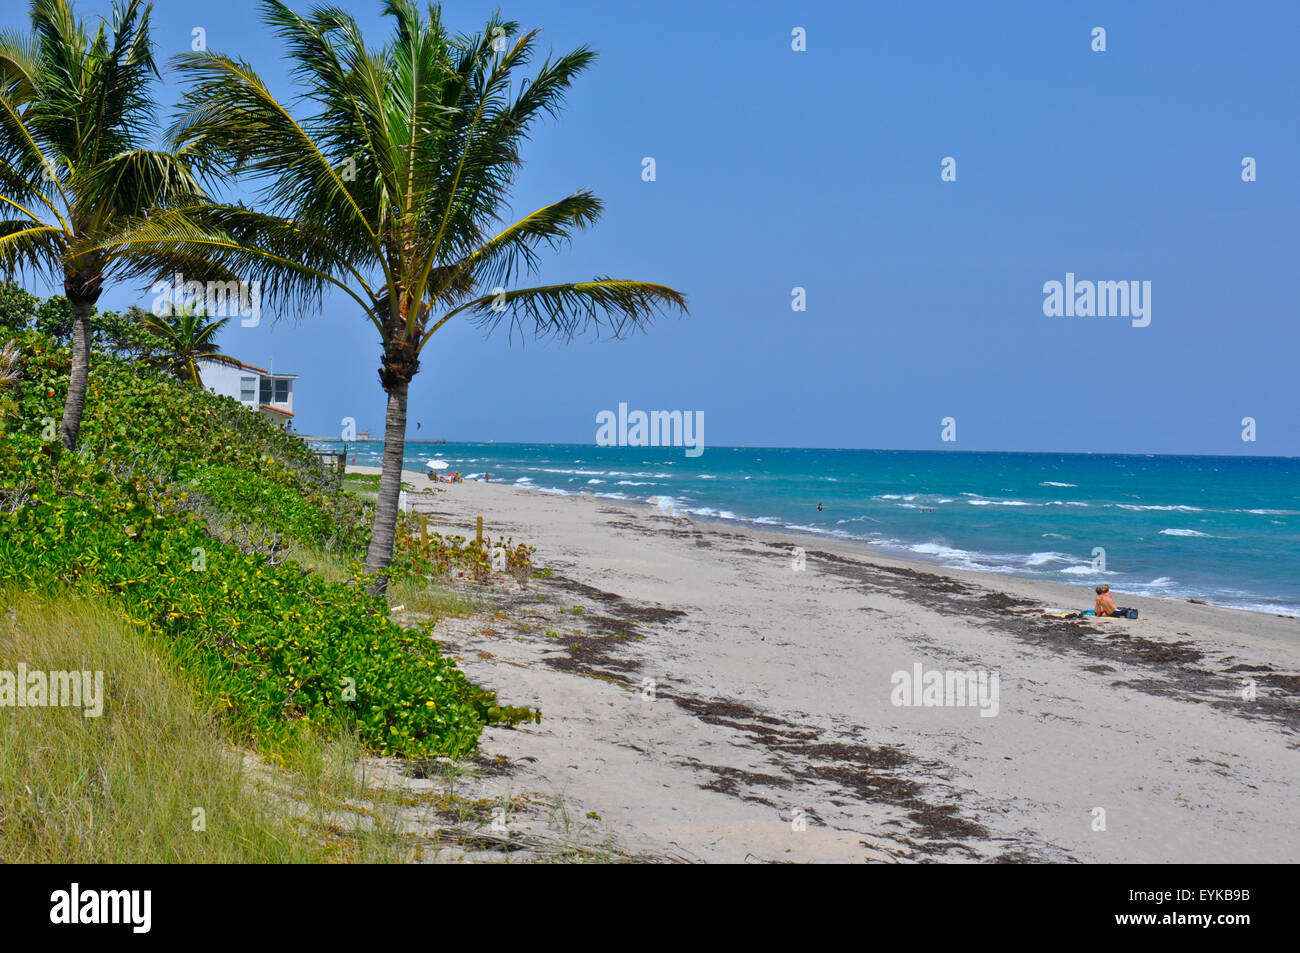 Malerische Aussicht auf tropischen Strand von Fort Lauderdale, Florida, USA zeigt den Ozean, ein paar Sonnen und Palmen Bäume. Stockfoto